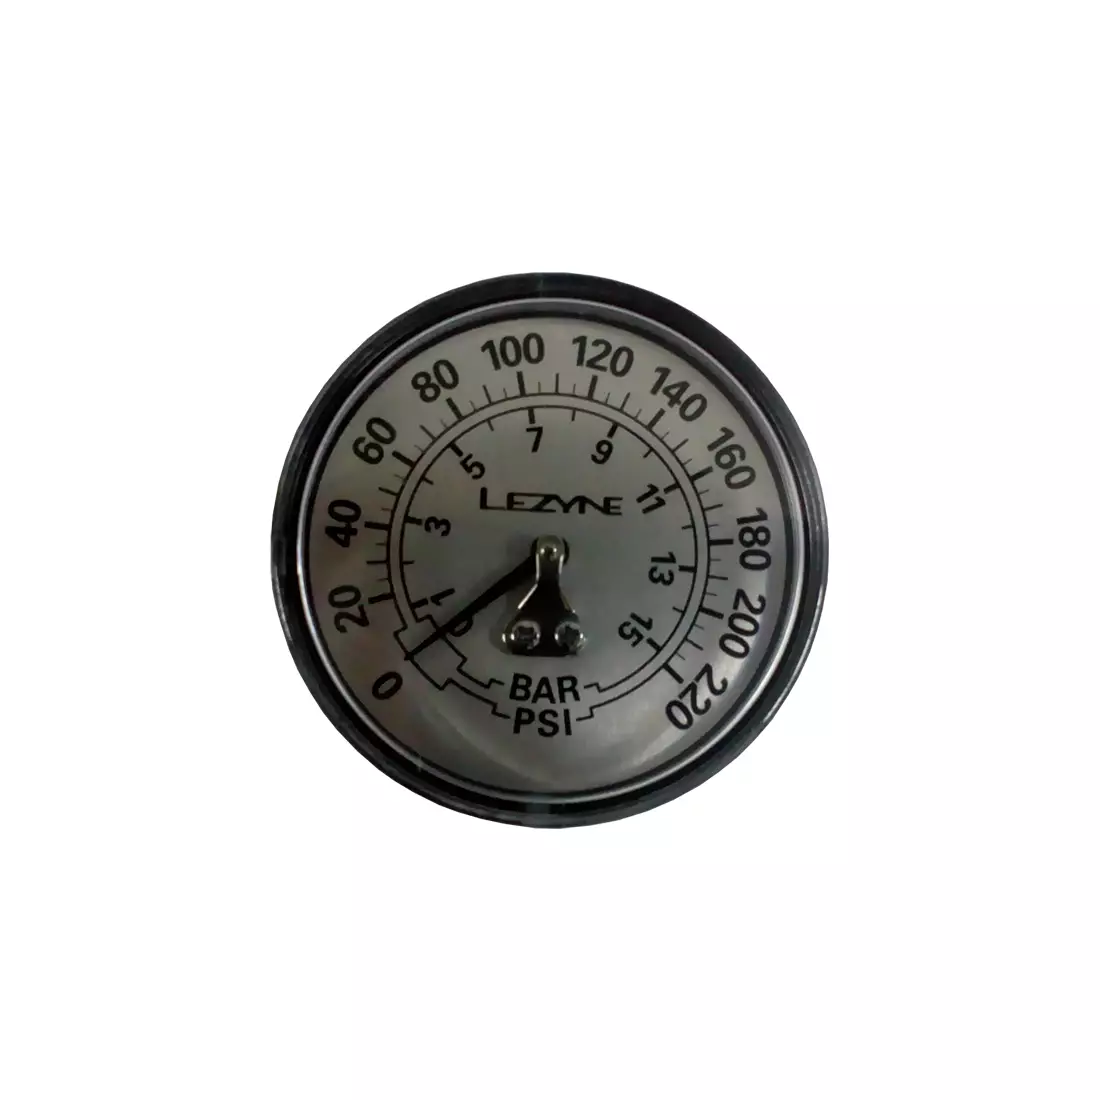 LEZYNE 220 Manometer für Bodenpumpen LZN-1-RP-FLGUE-V2220